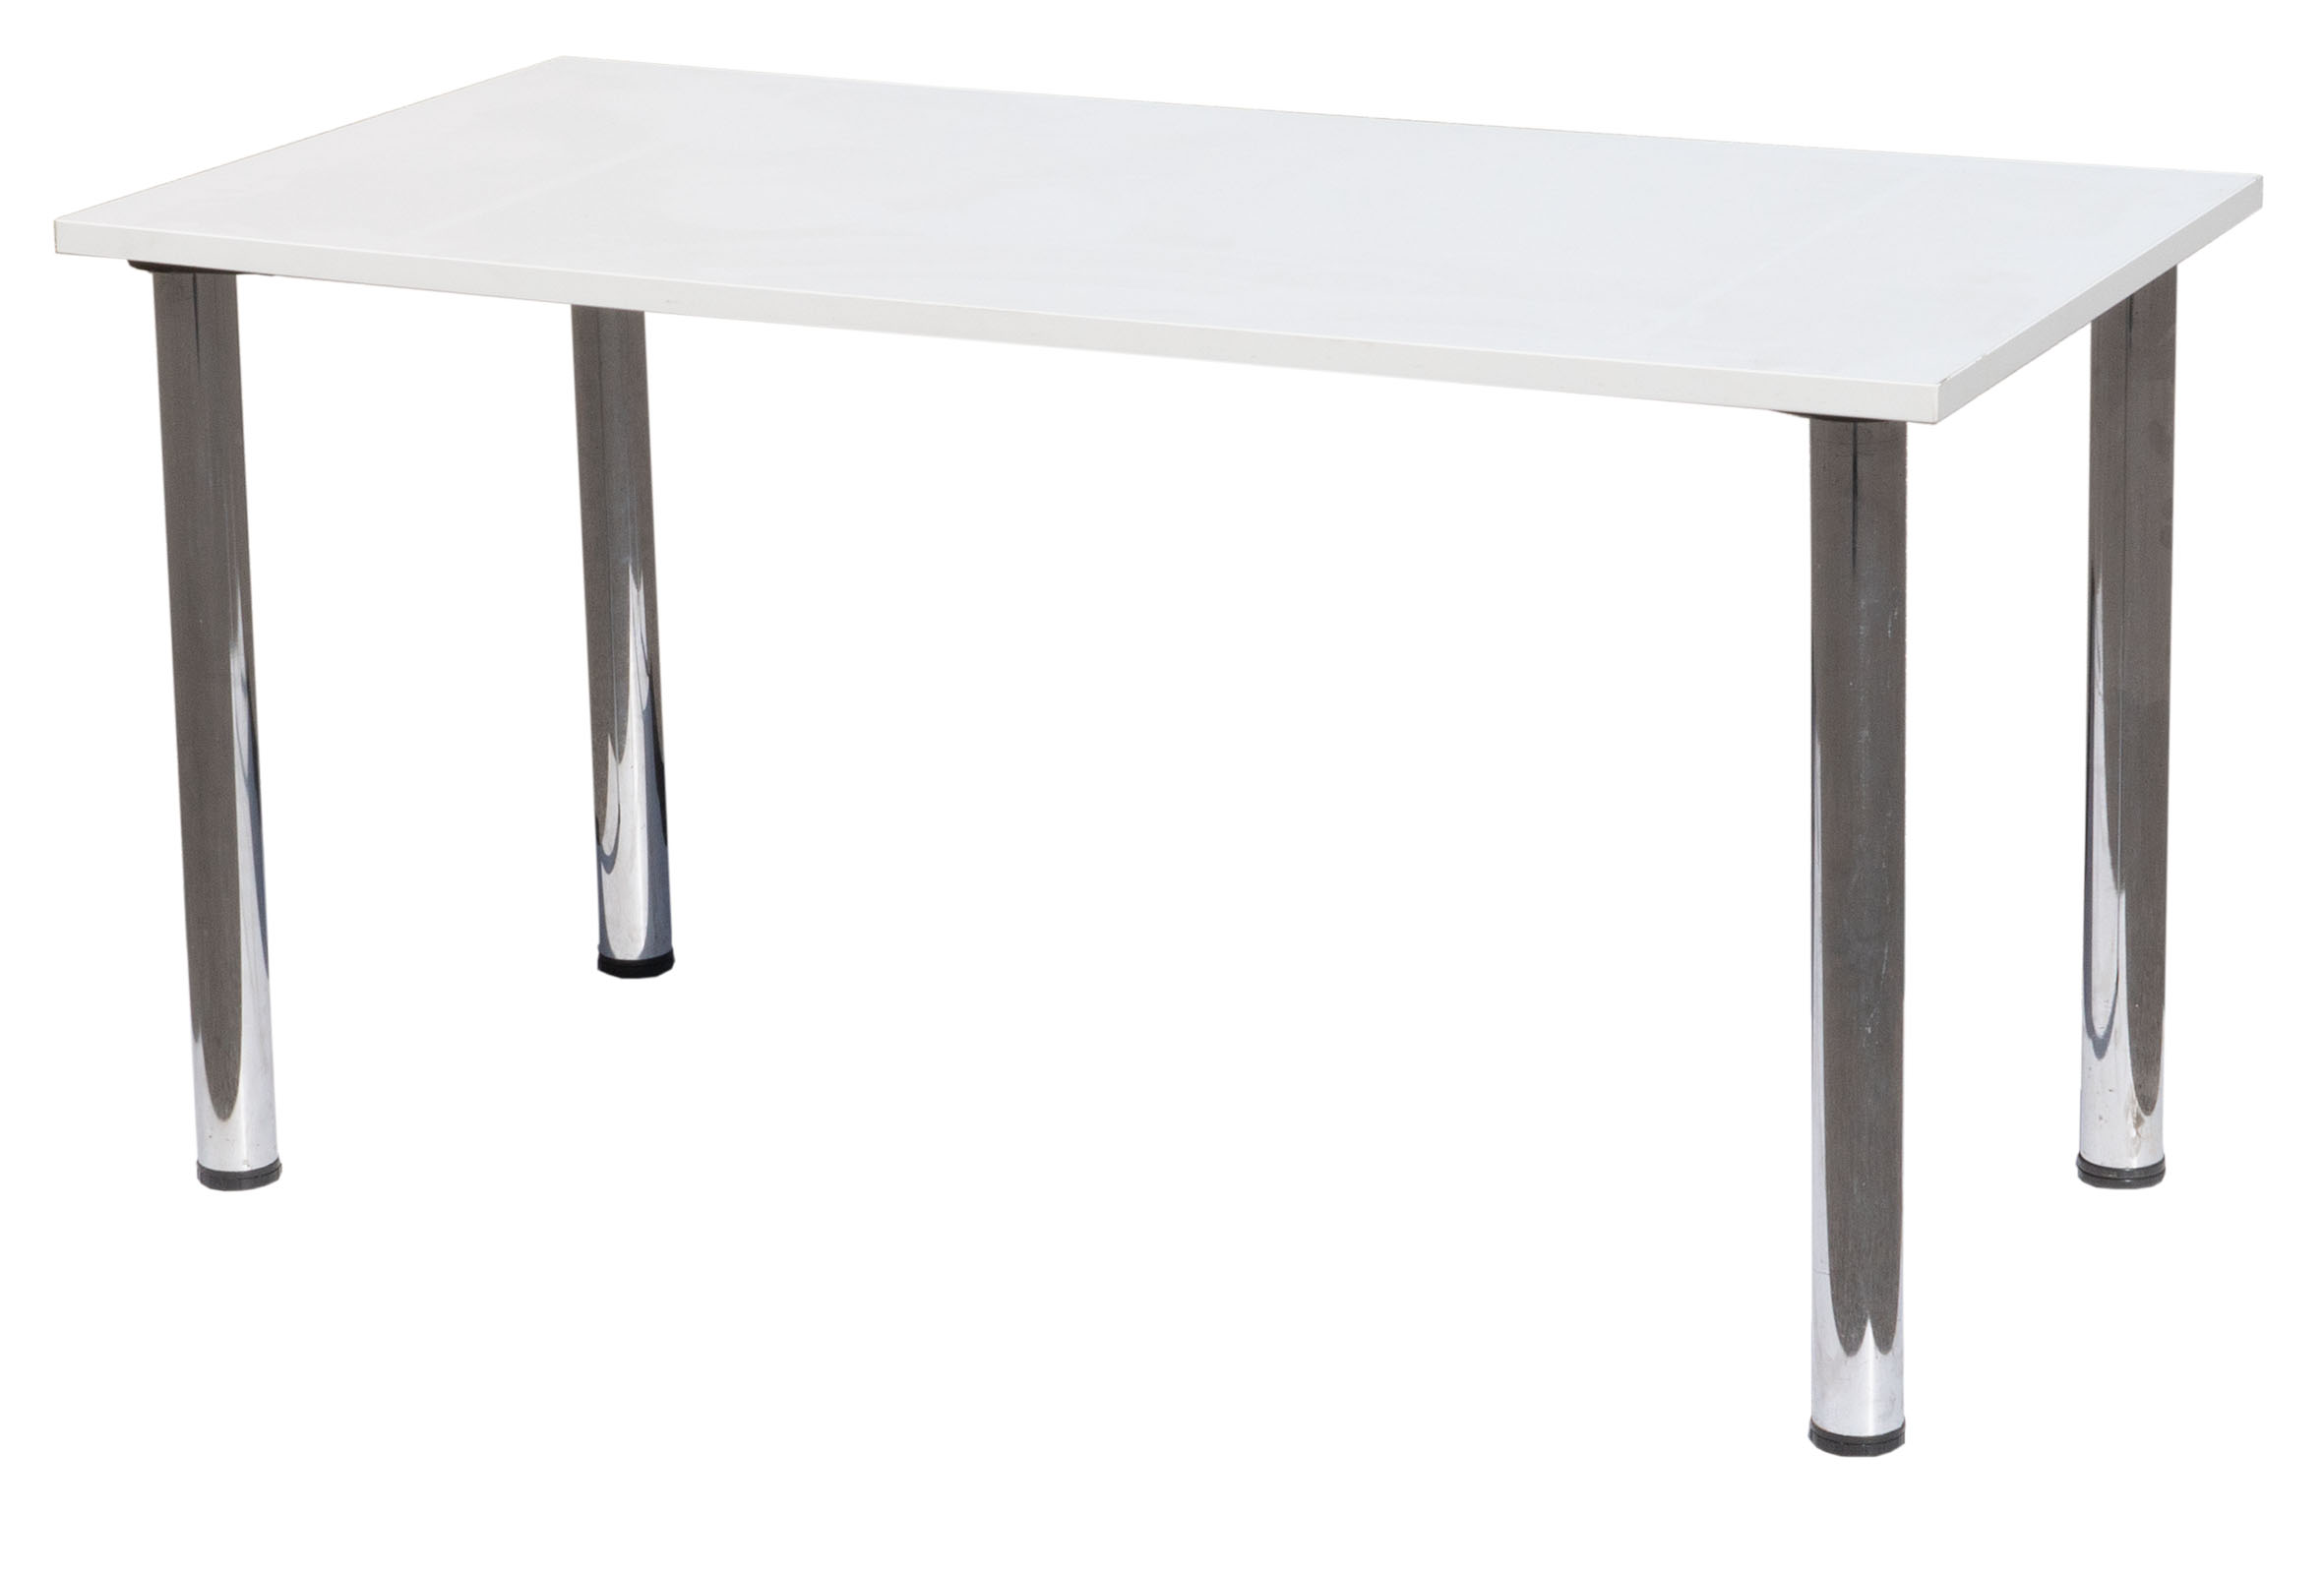 NEWPORT Tisch 140 cm x 70 cm / Palettenpreis mit 13 Tischsets